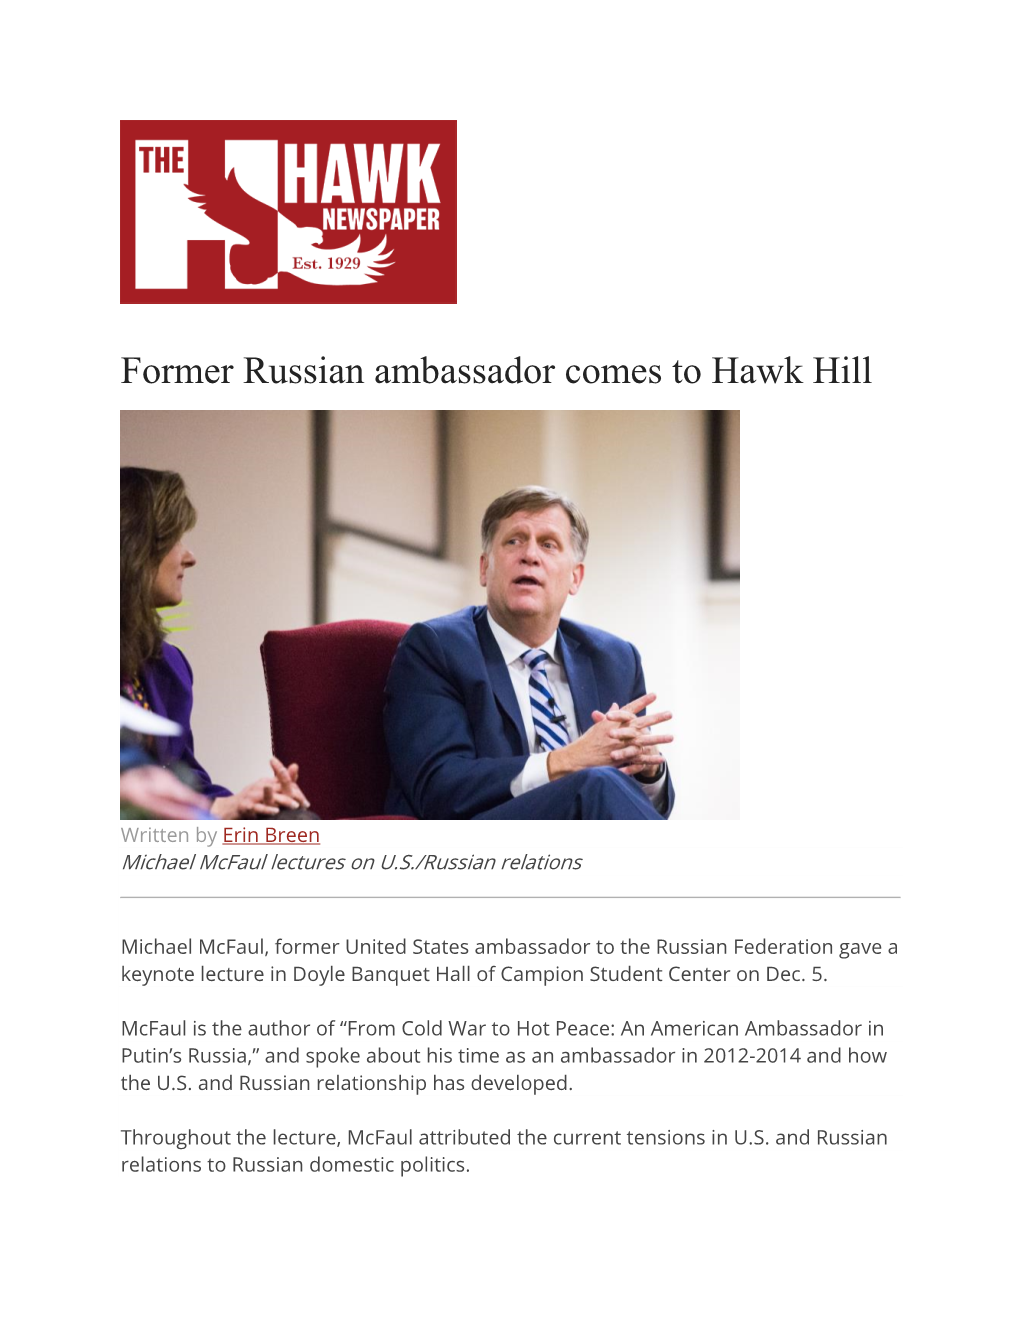 Former Russian Ambassador Comes to Hawk Hill